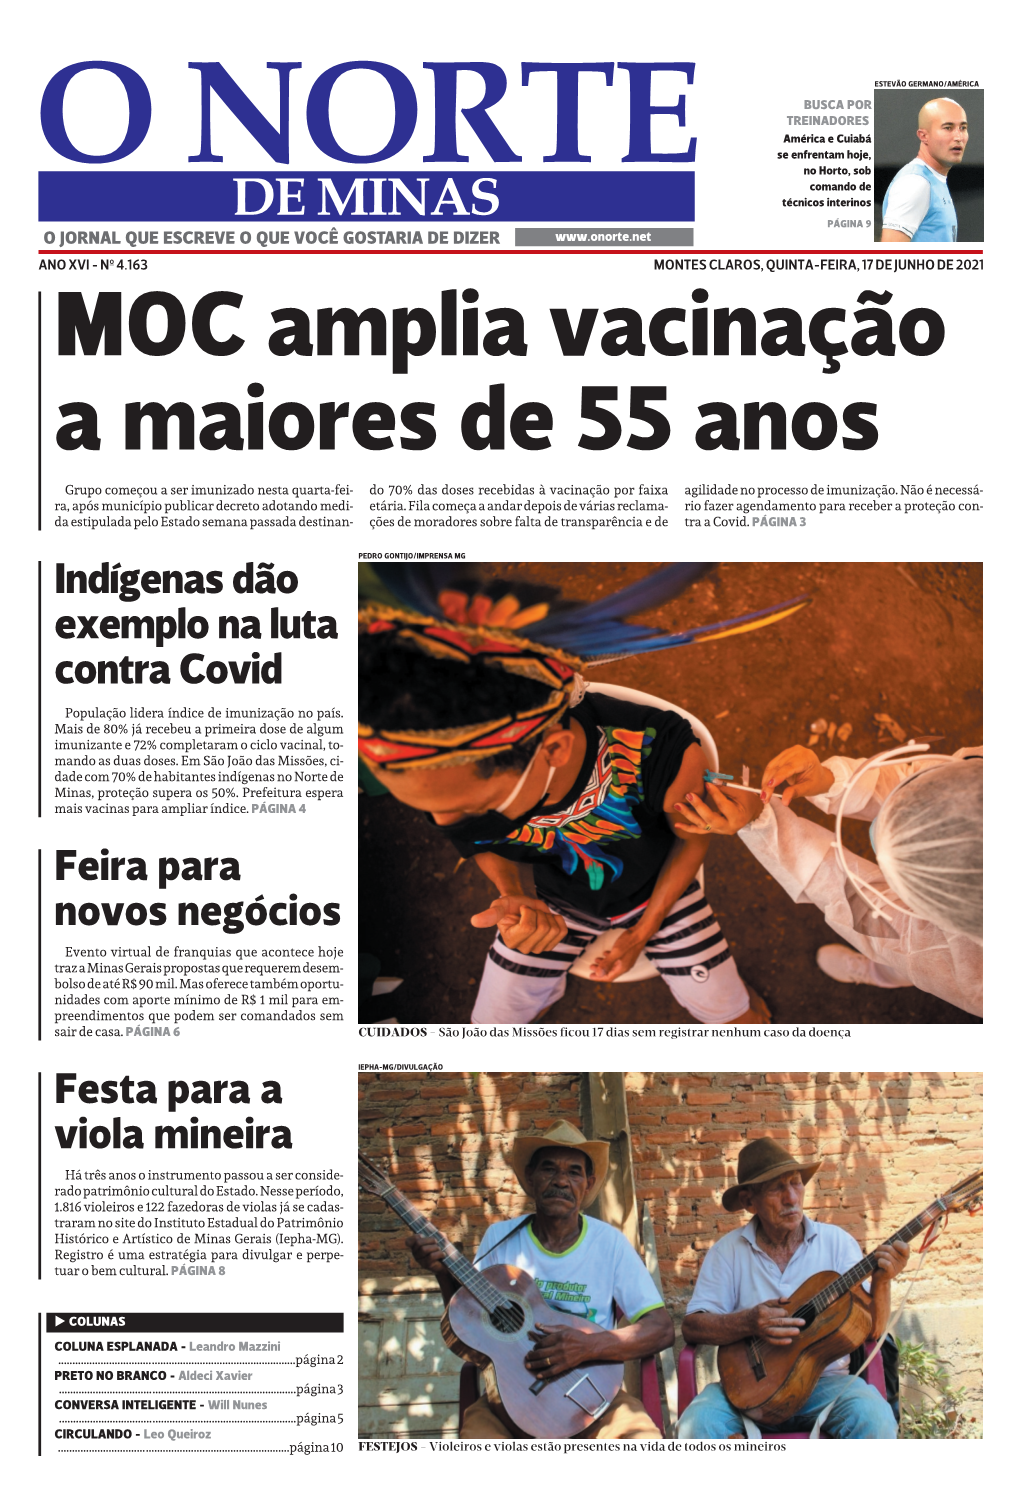 Festa Para a Viola Mineira Feira Para Novos Negócios Indígenas Dão Exemplo Na Luta Contra Covid